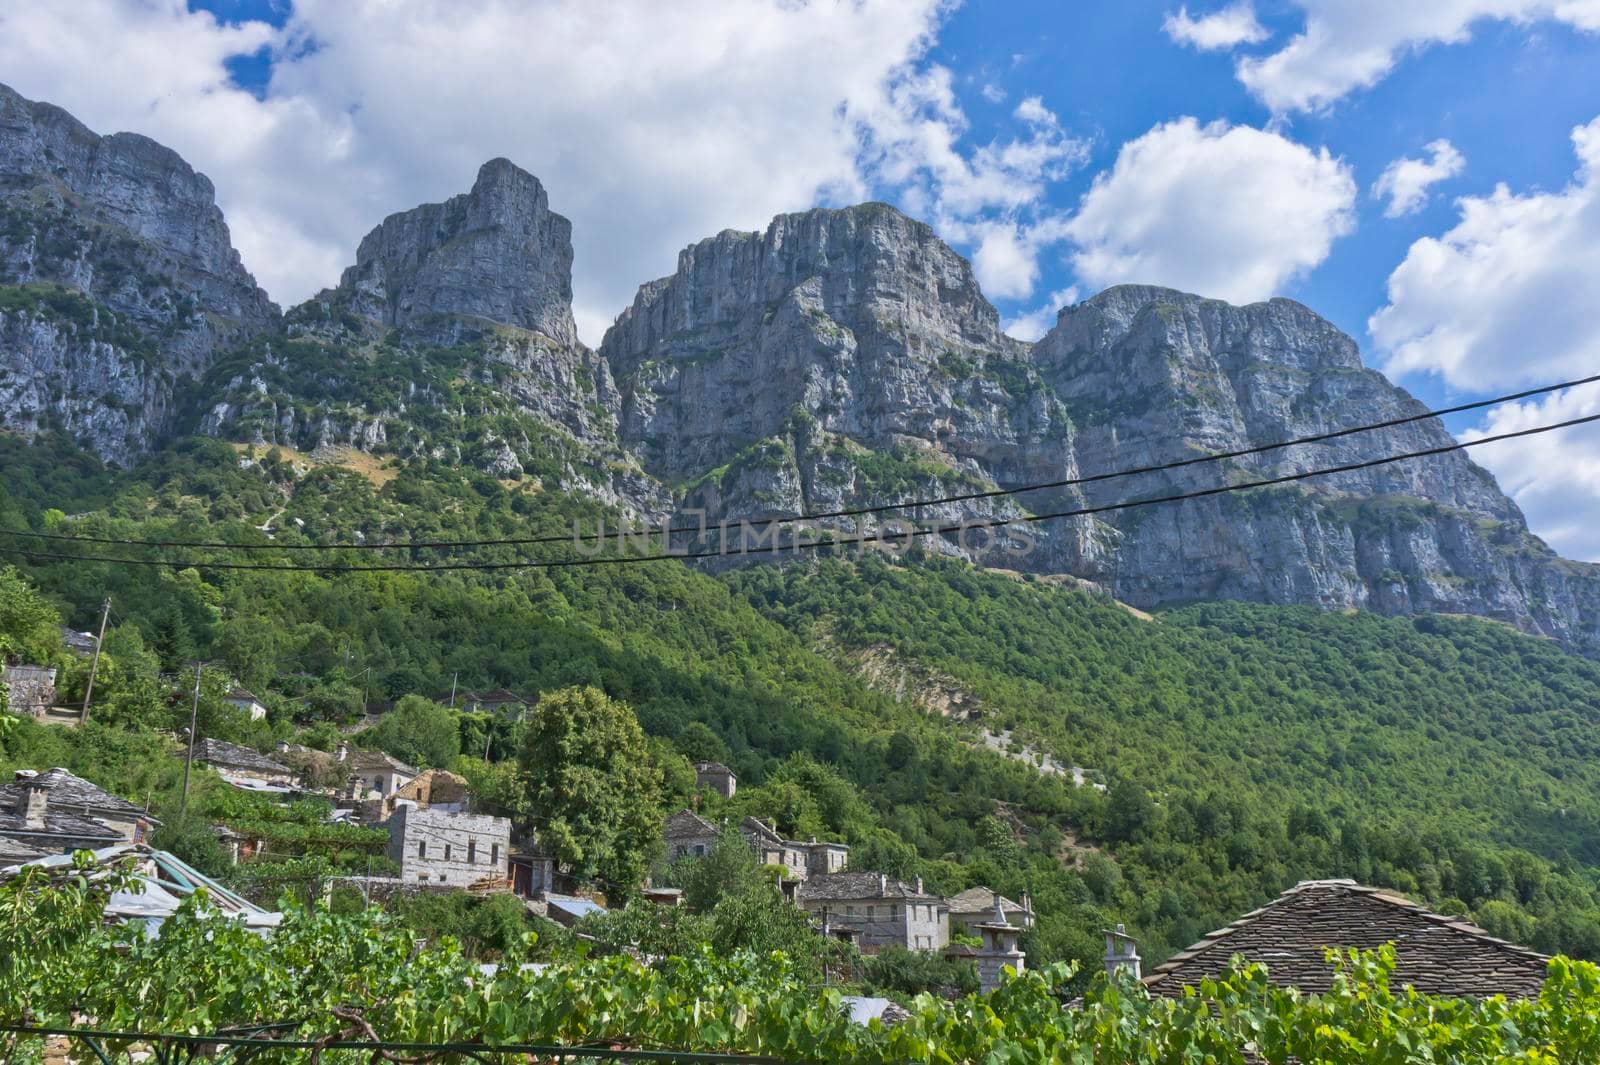 Vikos Gorge seen from Papingo Old stone village, Epirus, Greece, Europe by giannakisphoto